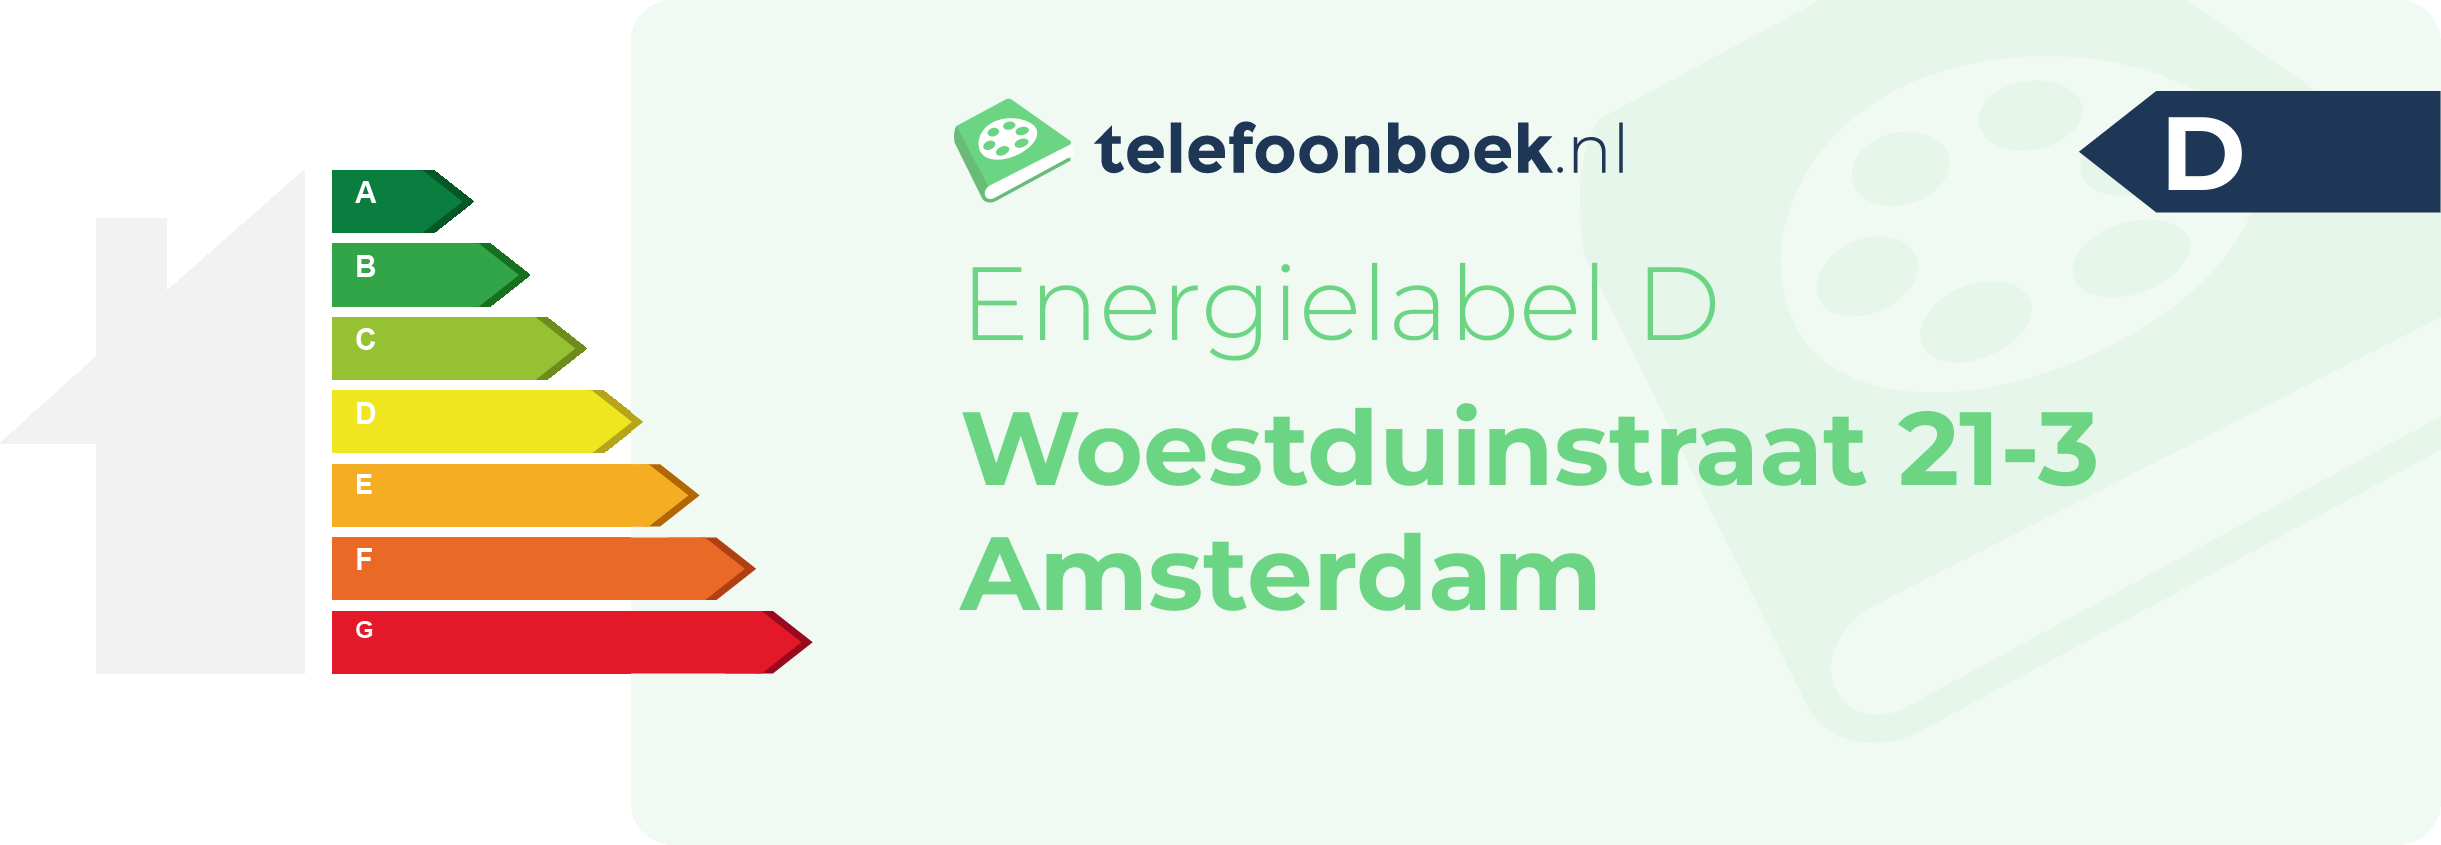 Energielabel Woestduinstraat 21-3 Amsterdam